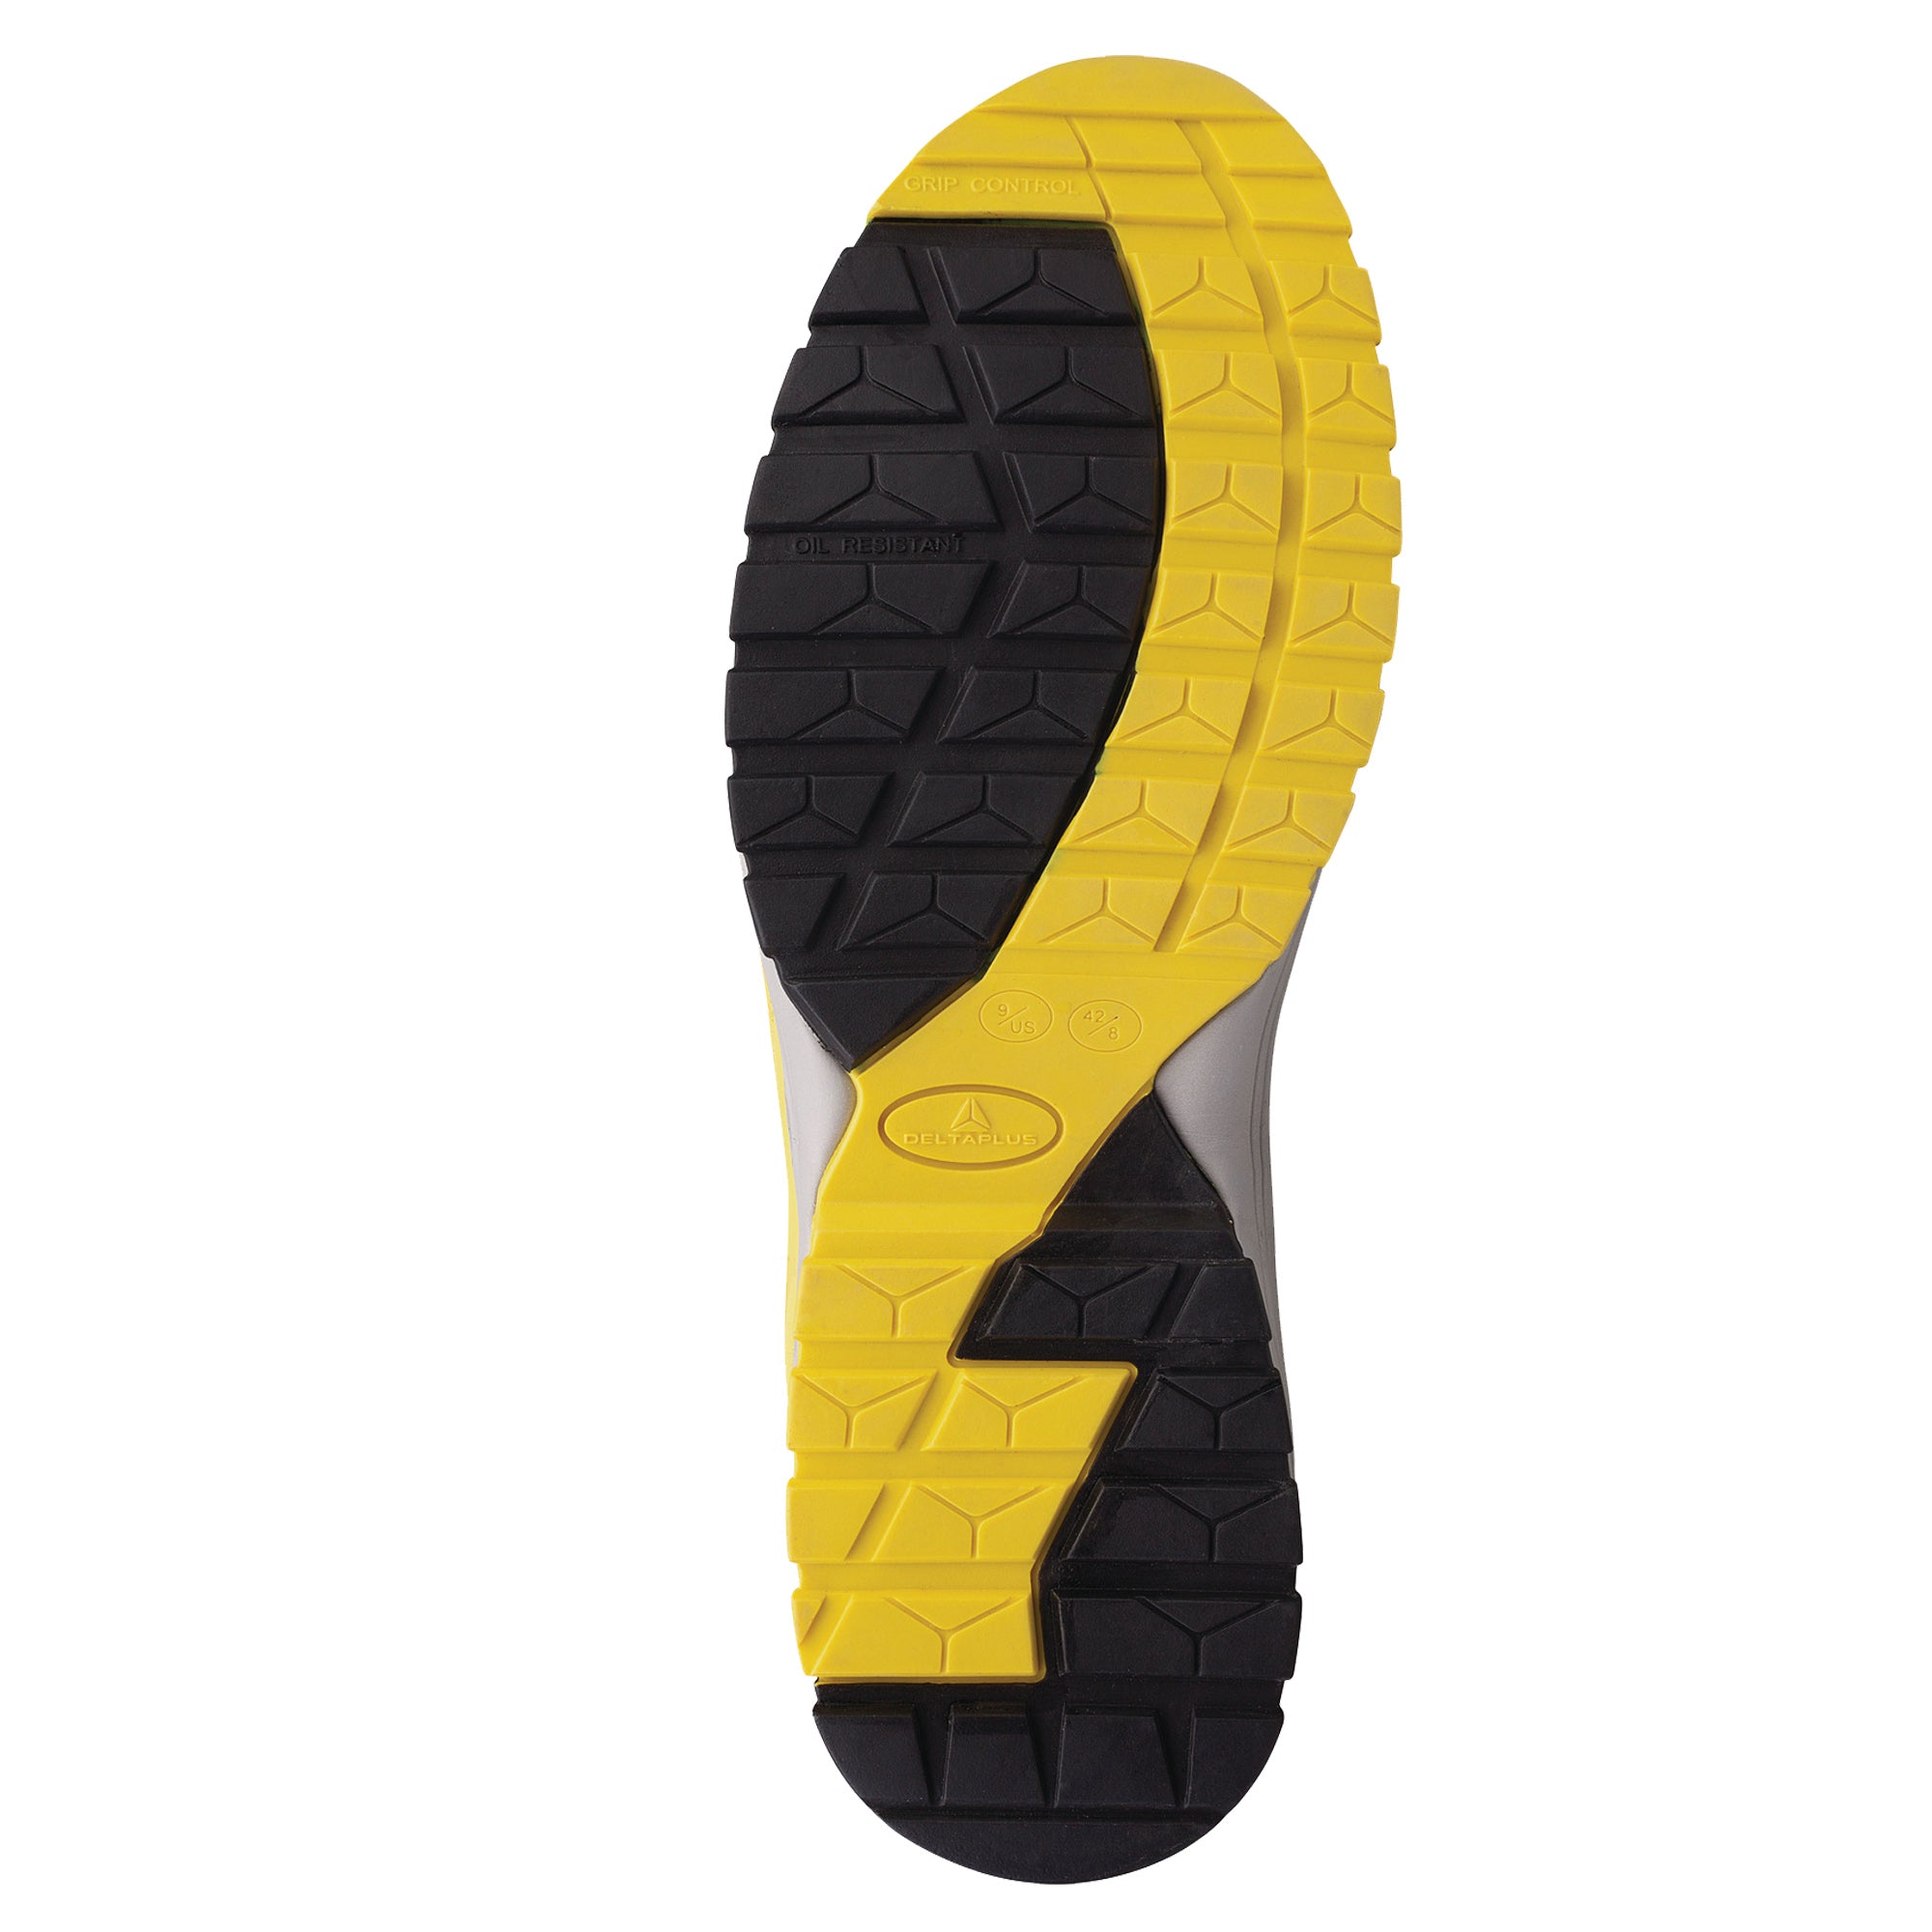 deltaplus-calzatura-sicurezza-memphis-bassa-s1p-esd-hro-src-n-43-nero-giallo